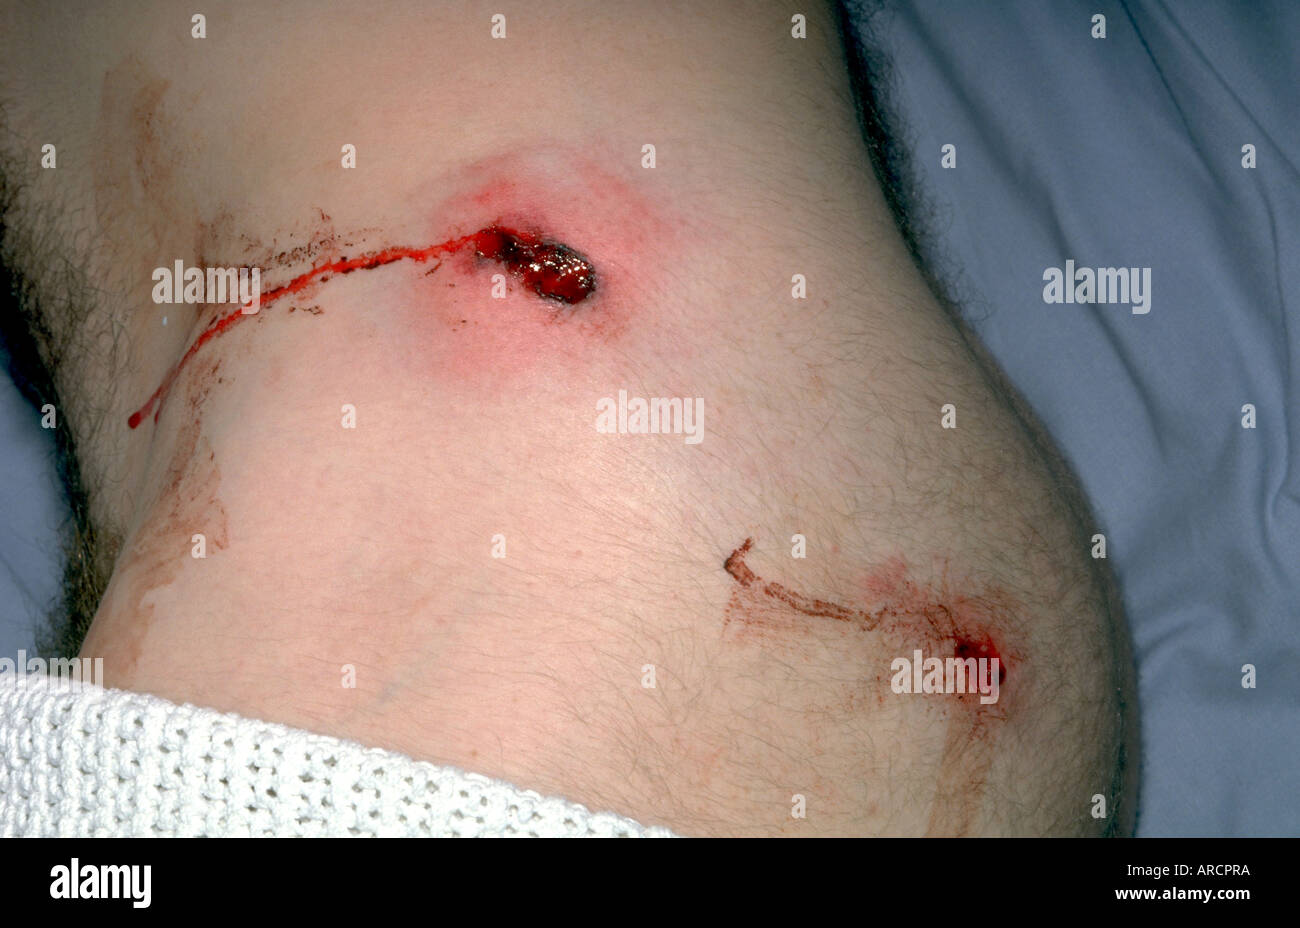 ak 47 bullet wound